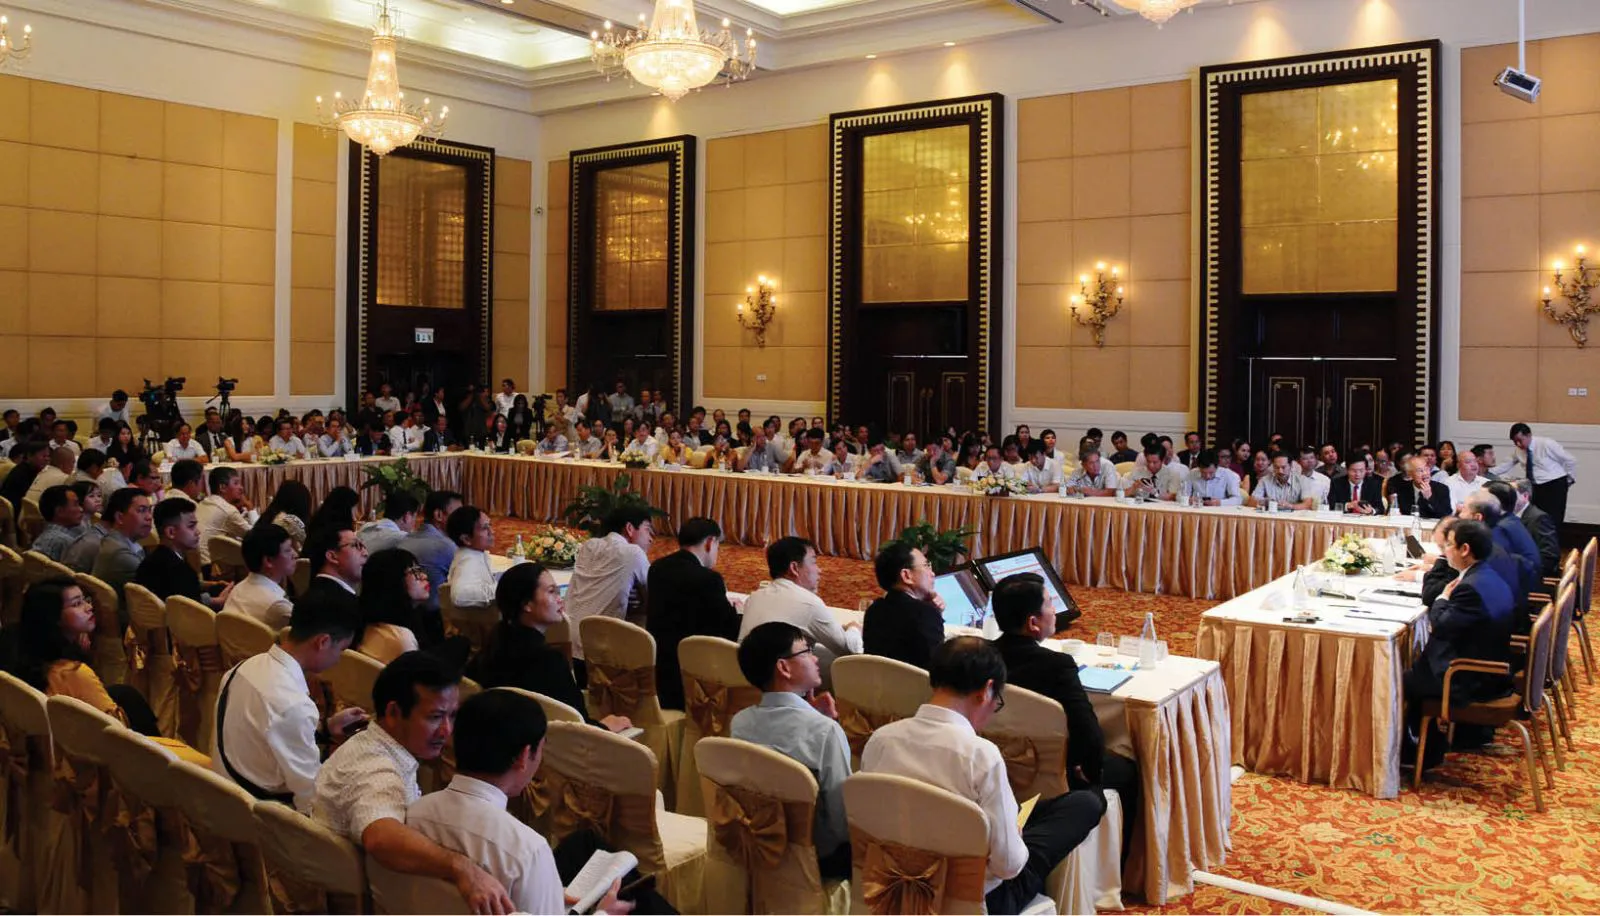 Tổ chức hội nghị tại Hà Nội uy tín chuyên nghiệp